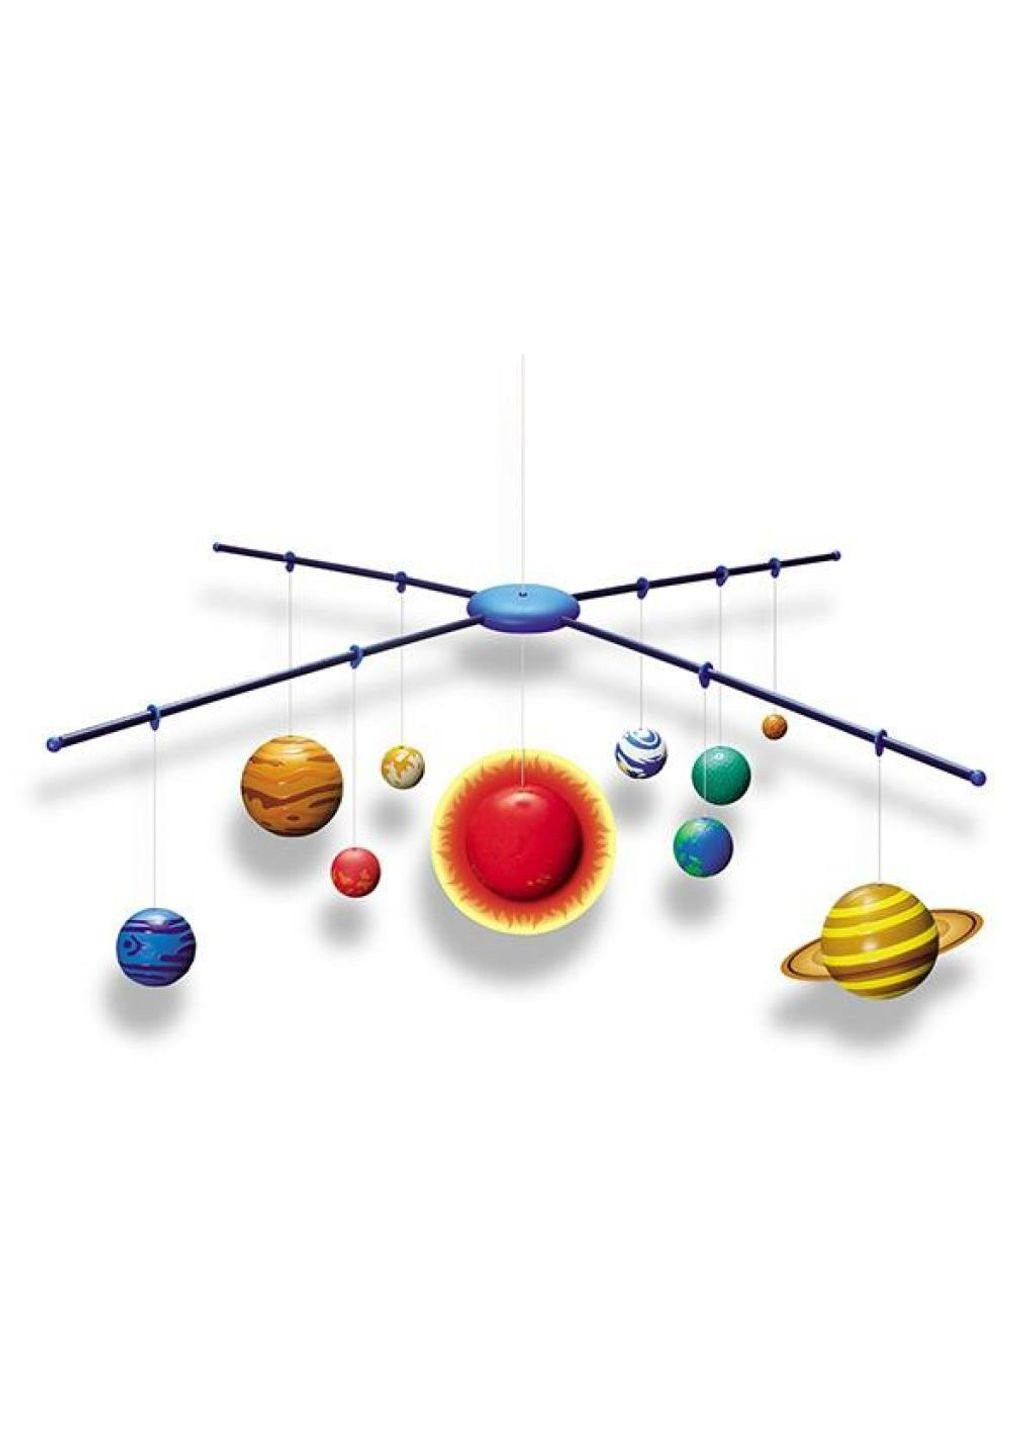 Набор для экспериментов для исследований 3D-модель Солнечной системы 4М (252418967)